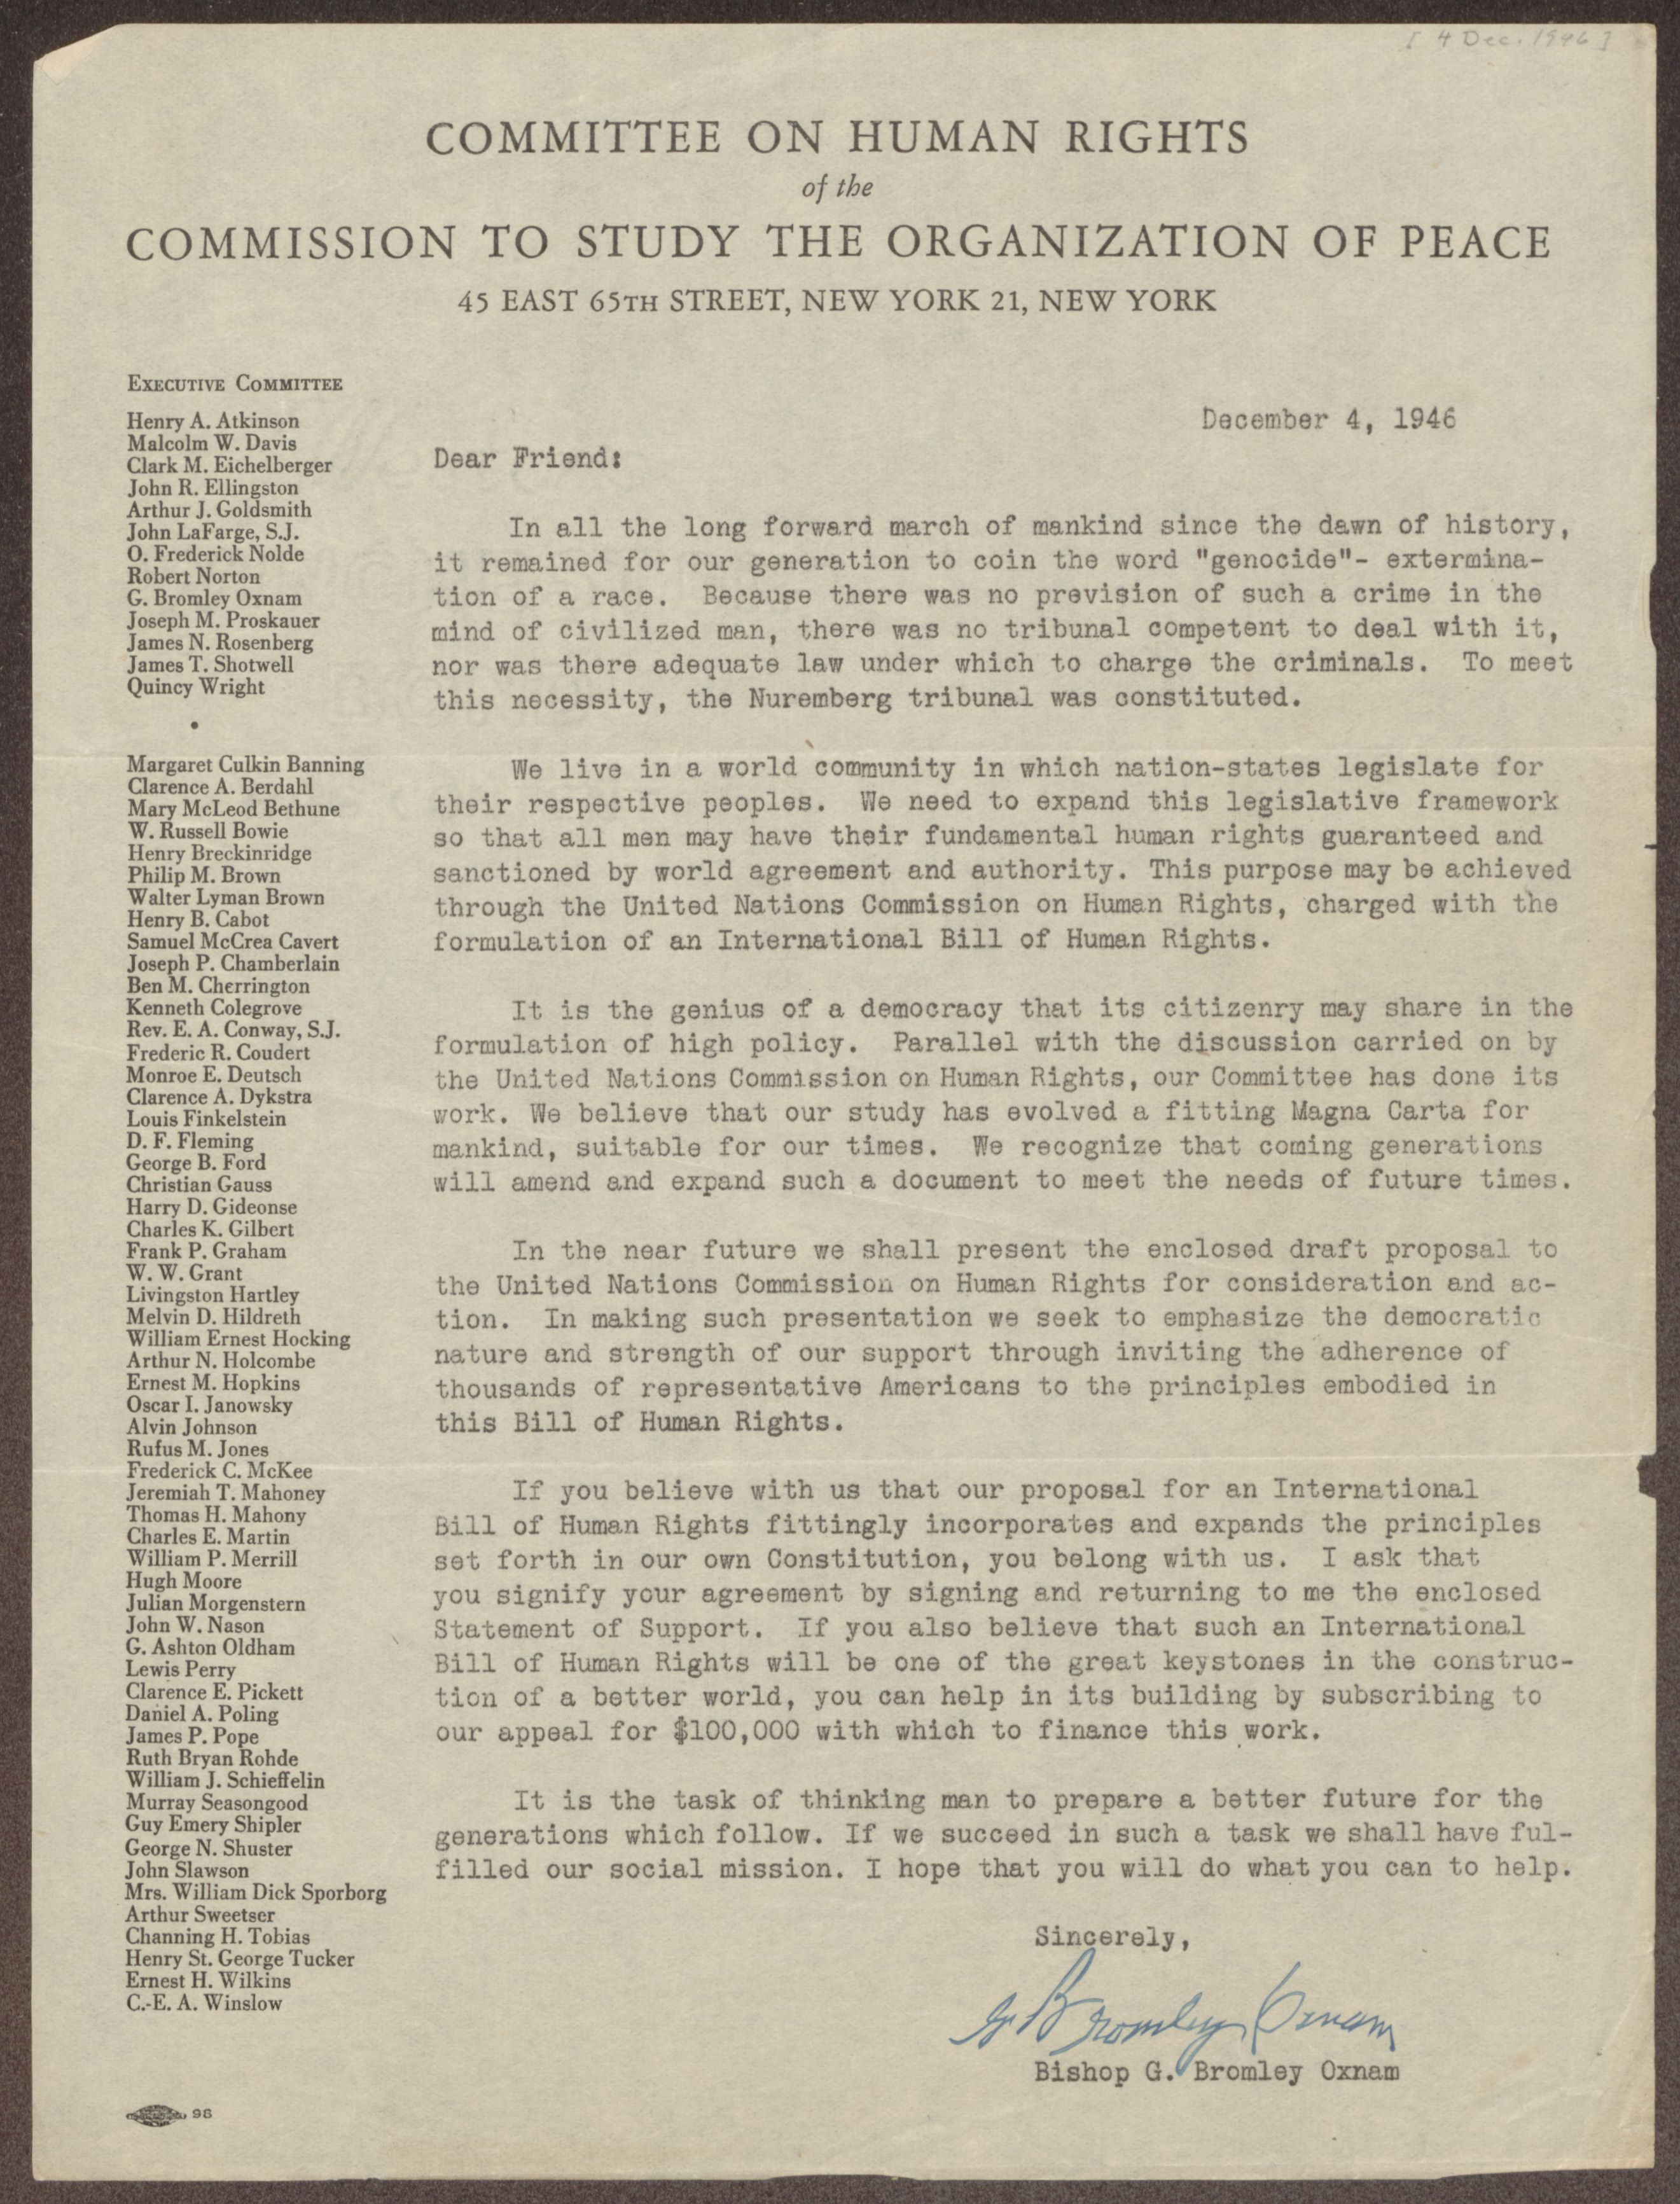 一封信发送成员和子公司的人权委员会委员会研究和平的组织。这封信发送1946年,二战后一年,表达了对政府及其政策影响了战争对人类与国际关系。在信中,委员会表示需要一个国际人权法案适用于所有国家。他们还附上他们的建议草案人权法案(不是图)。